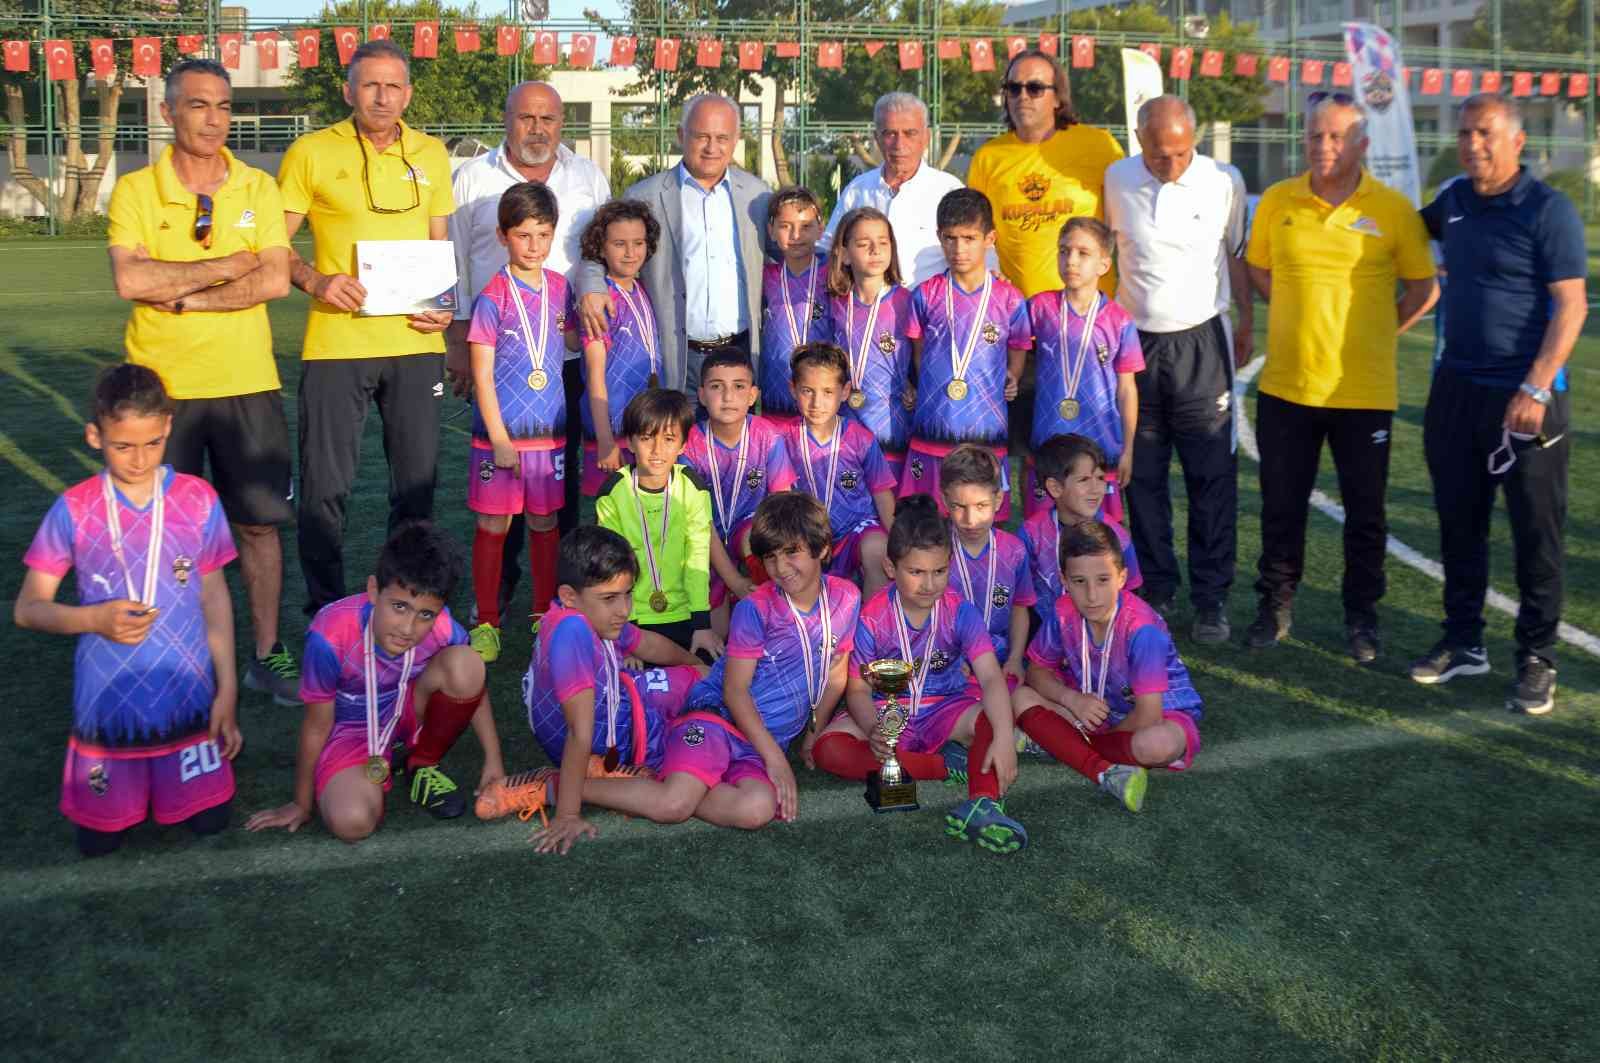 mersin buyuksehir belediyesi 23 nisan futbol turnuvasi sona erdi 92efb79